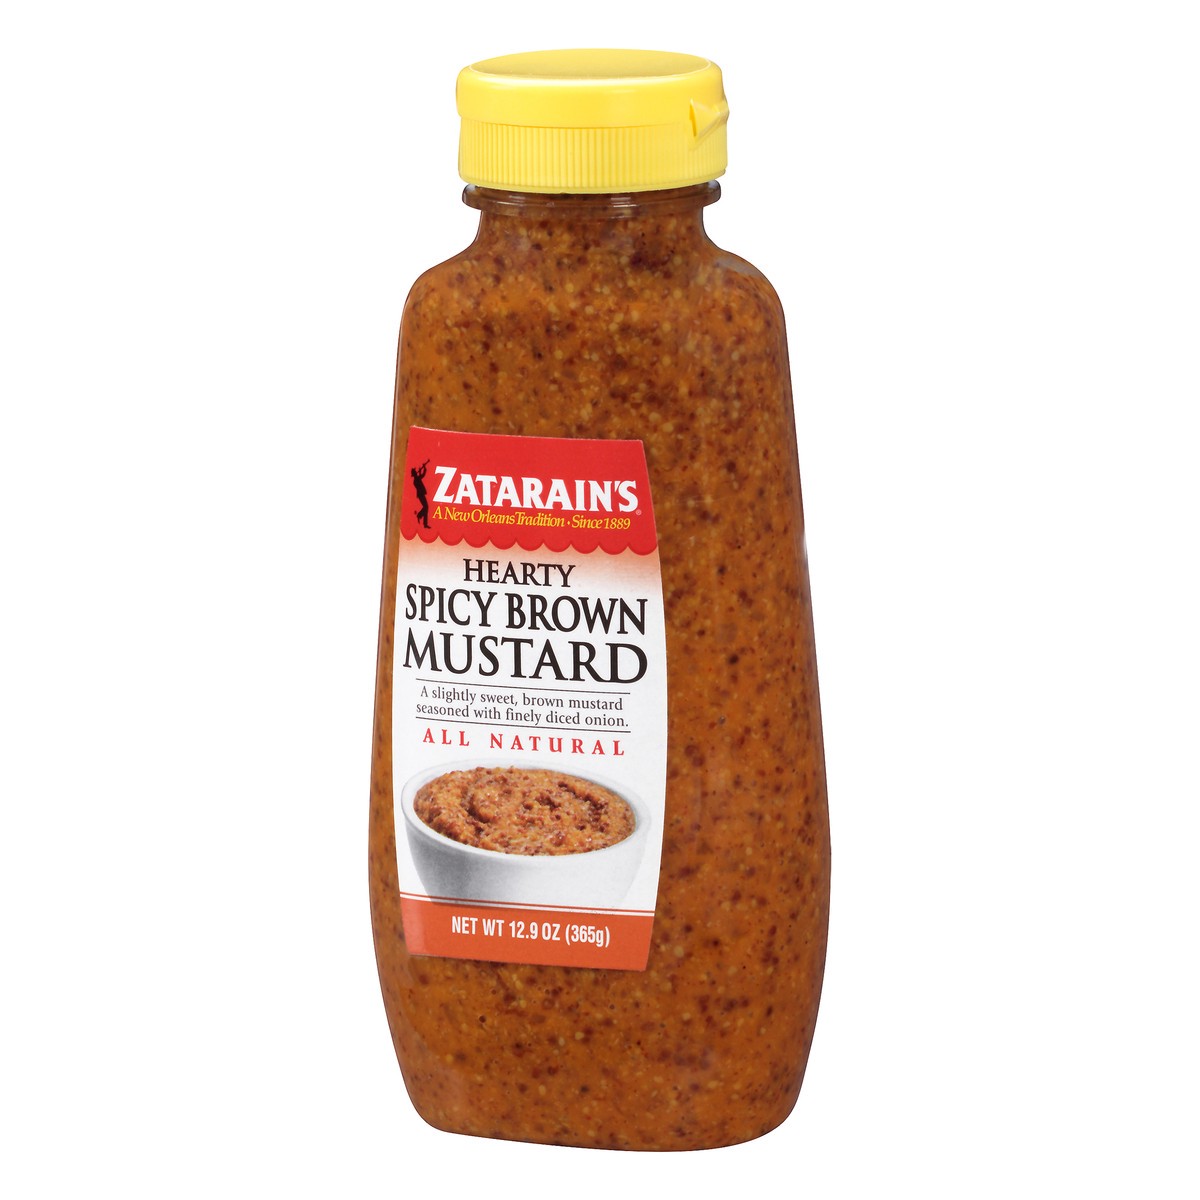 slide 3 of 10, Zatarain's Mustard Hearty Spicy Brown Mustard, 12.9 Oz, 12.9 oz